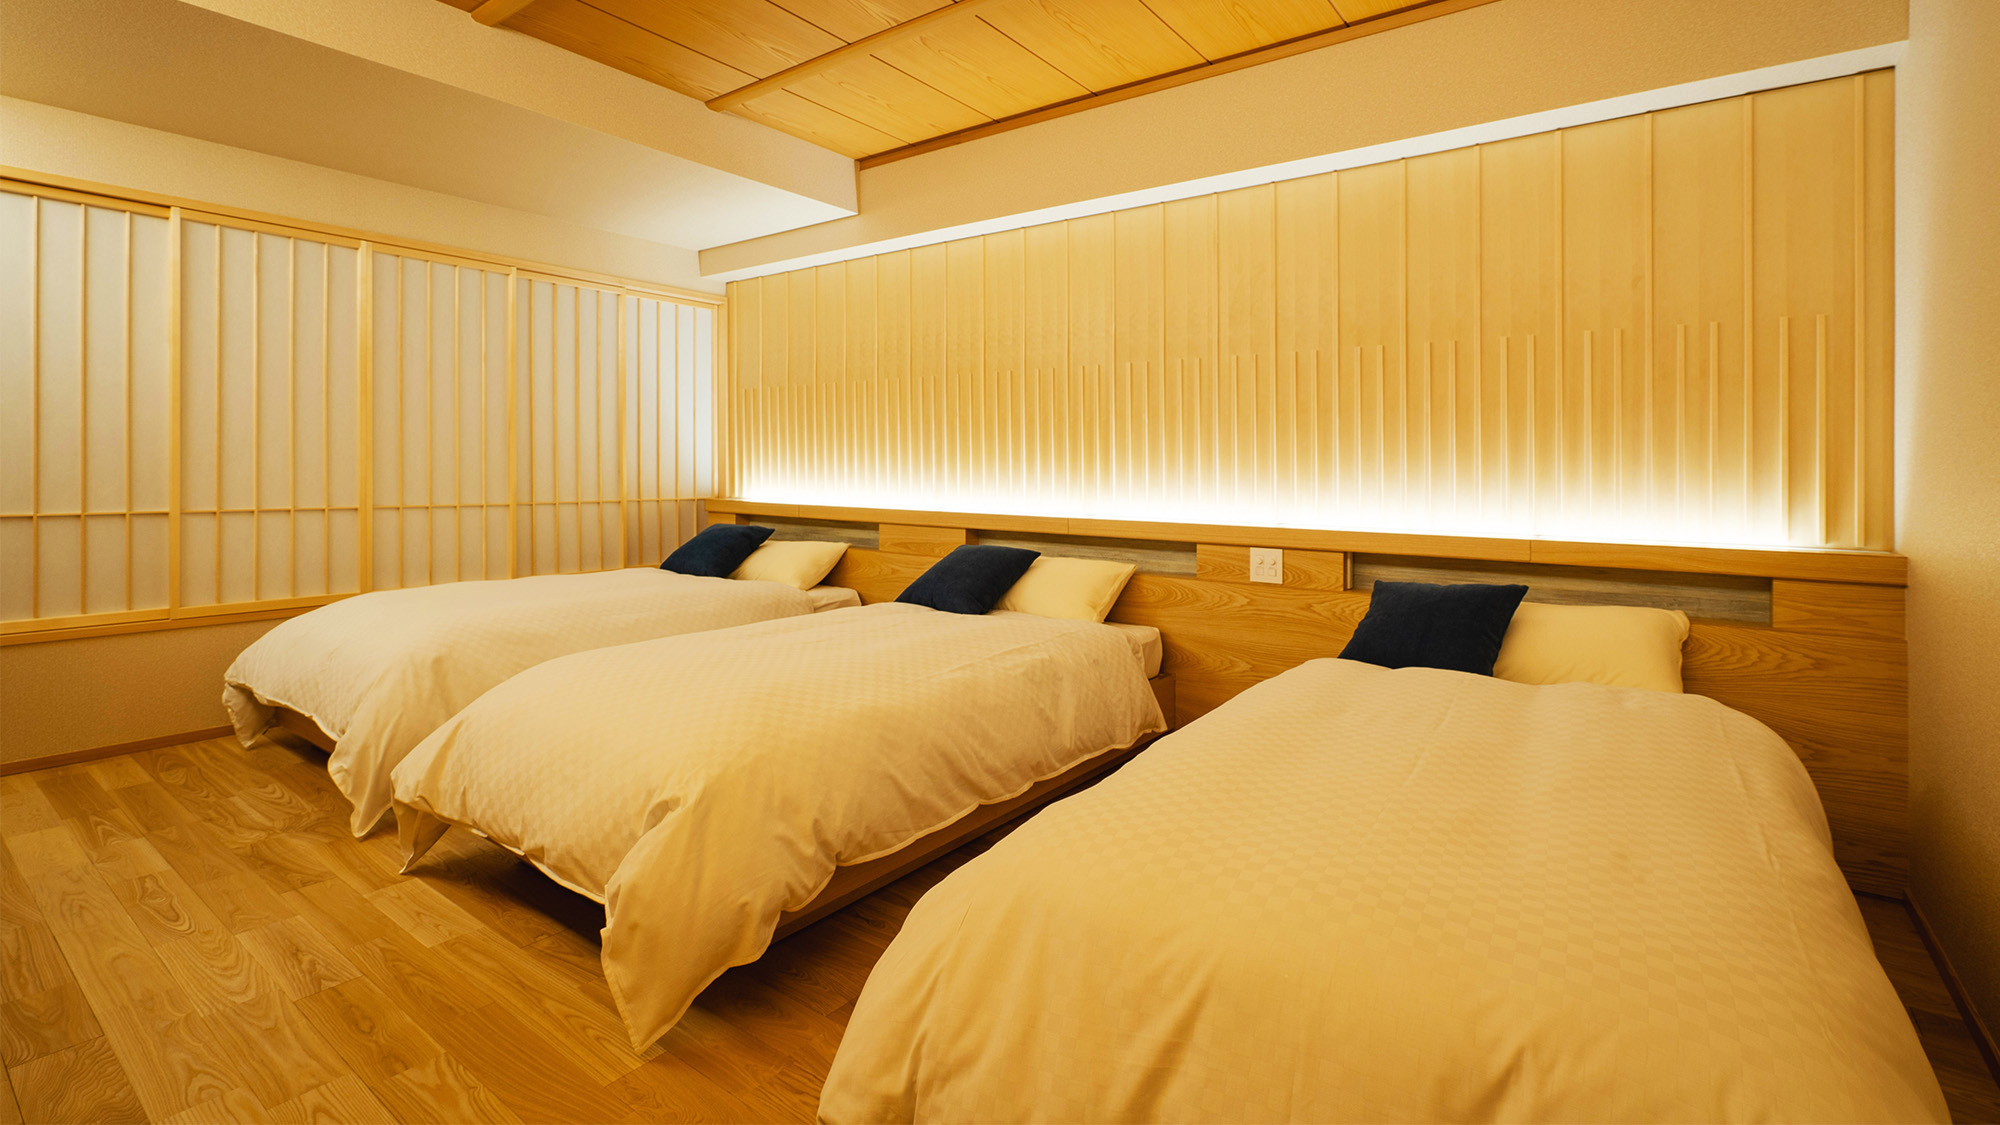 緑庭華・桜恋華・藍風華・紅天華3ベッドタイプのお部屋です。